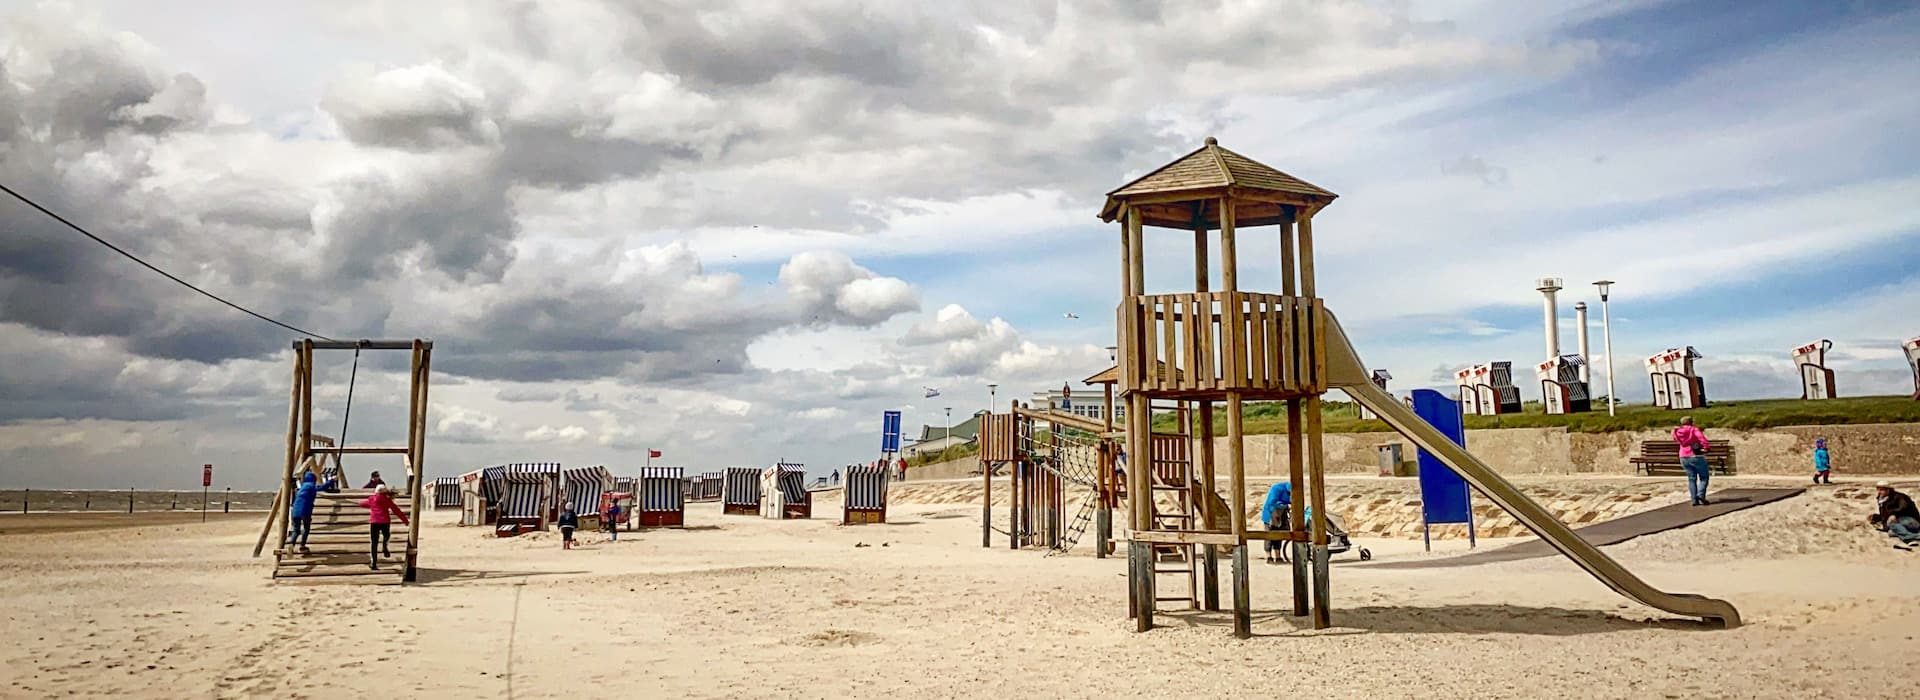 Ein Kinderspielplatz am Strand in Norderney